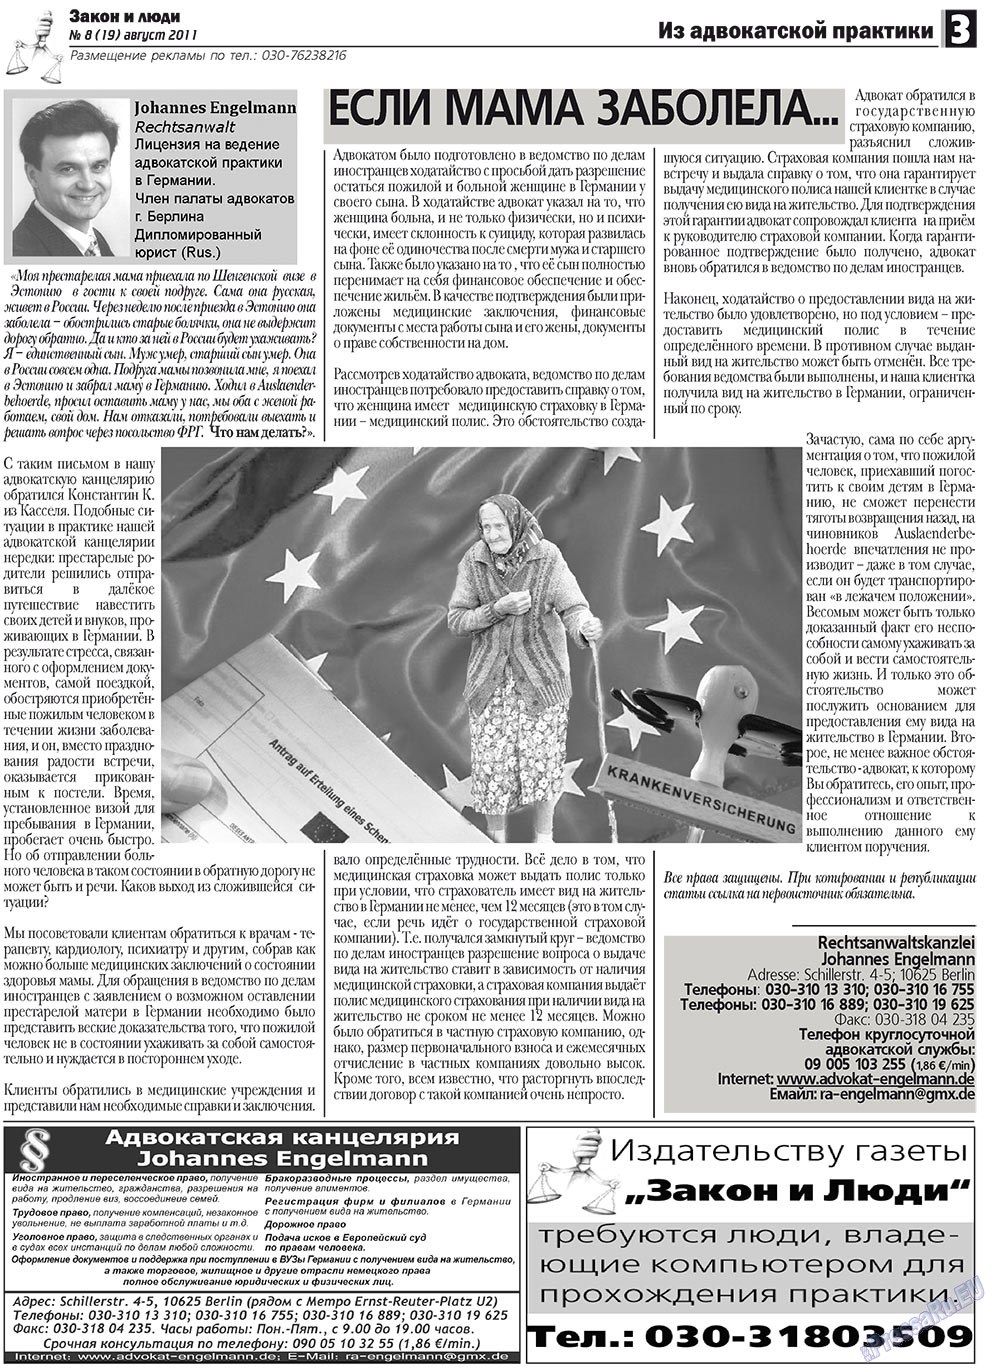 Закон и люди, газета. 2011 №8 стр.3